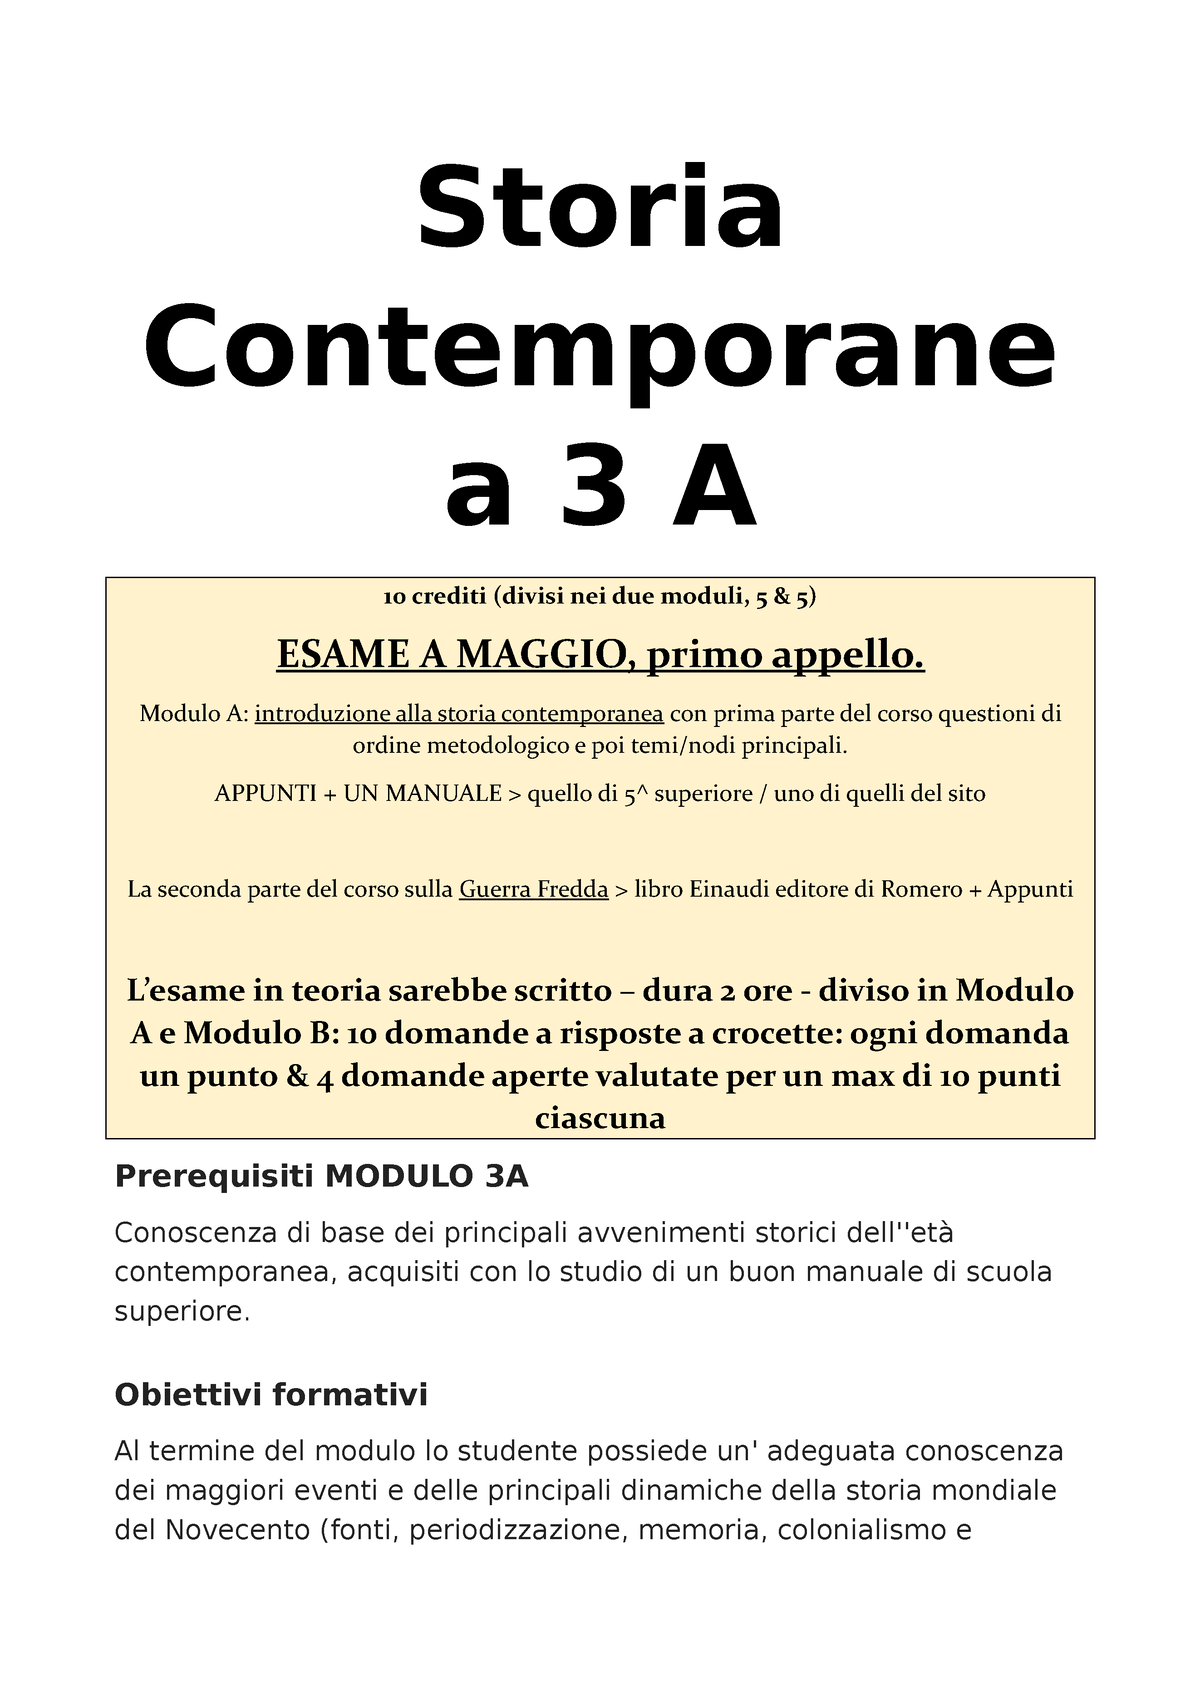 Appunti 3A - Prof. Scirocco - Storia Contemporane a 3 A 10 crediti (divisi  nei due moduli, 5 & - Studocu